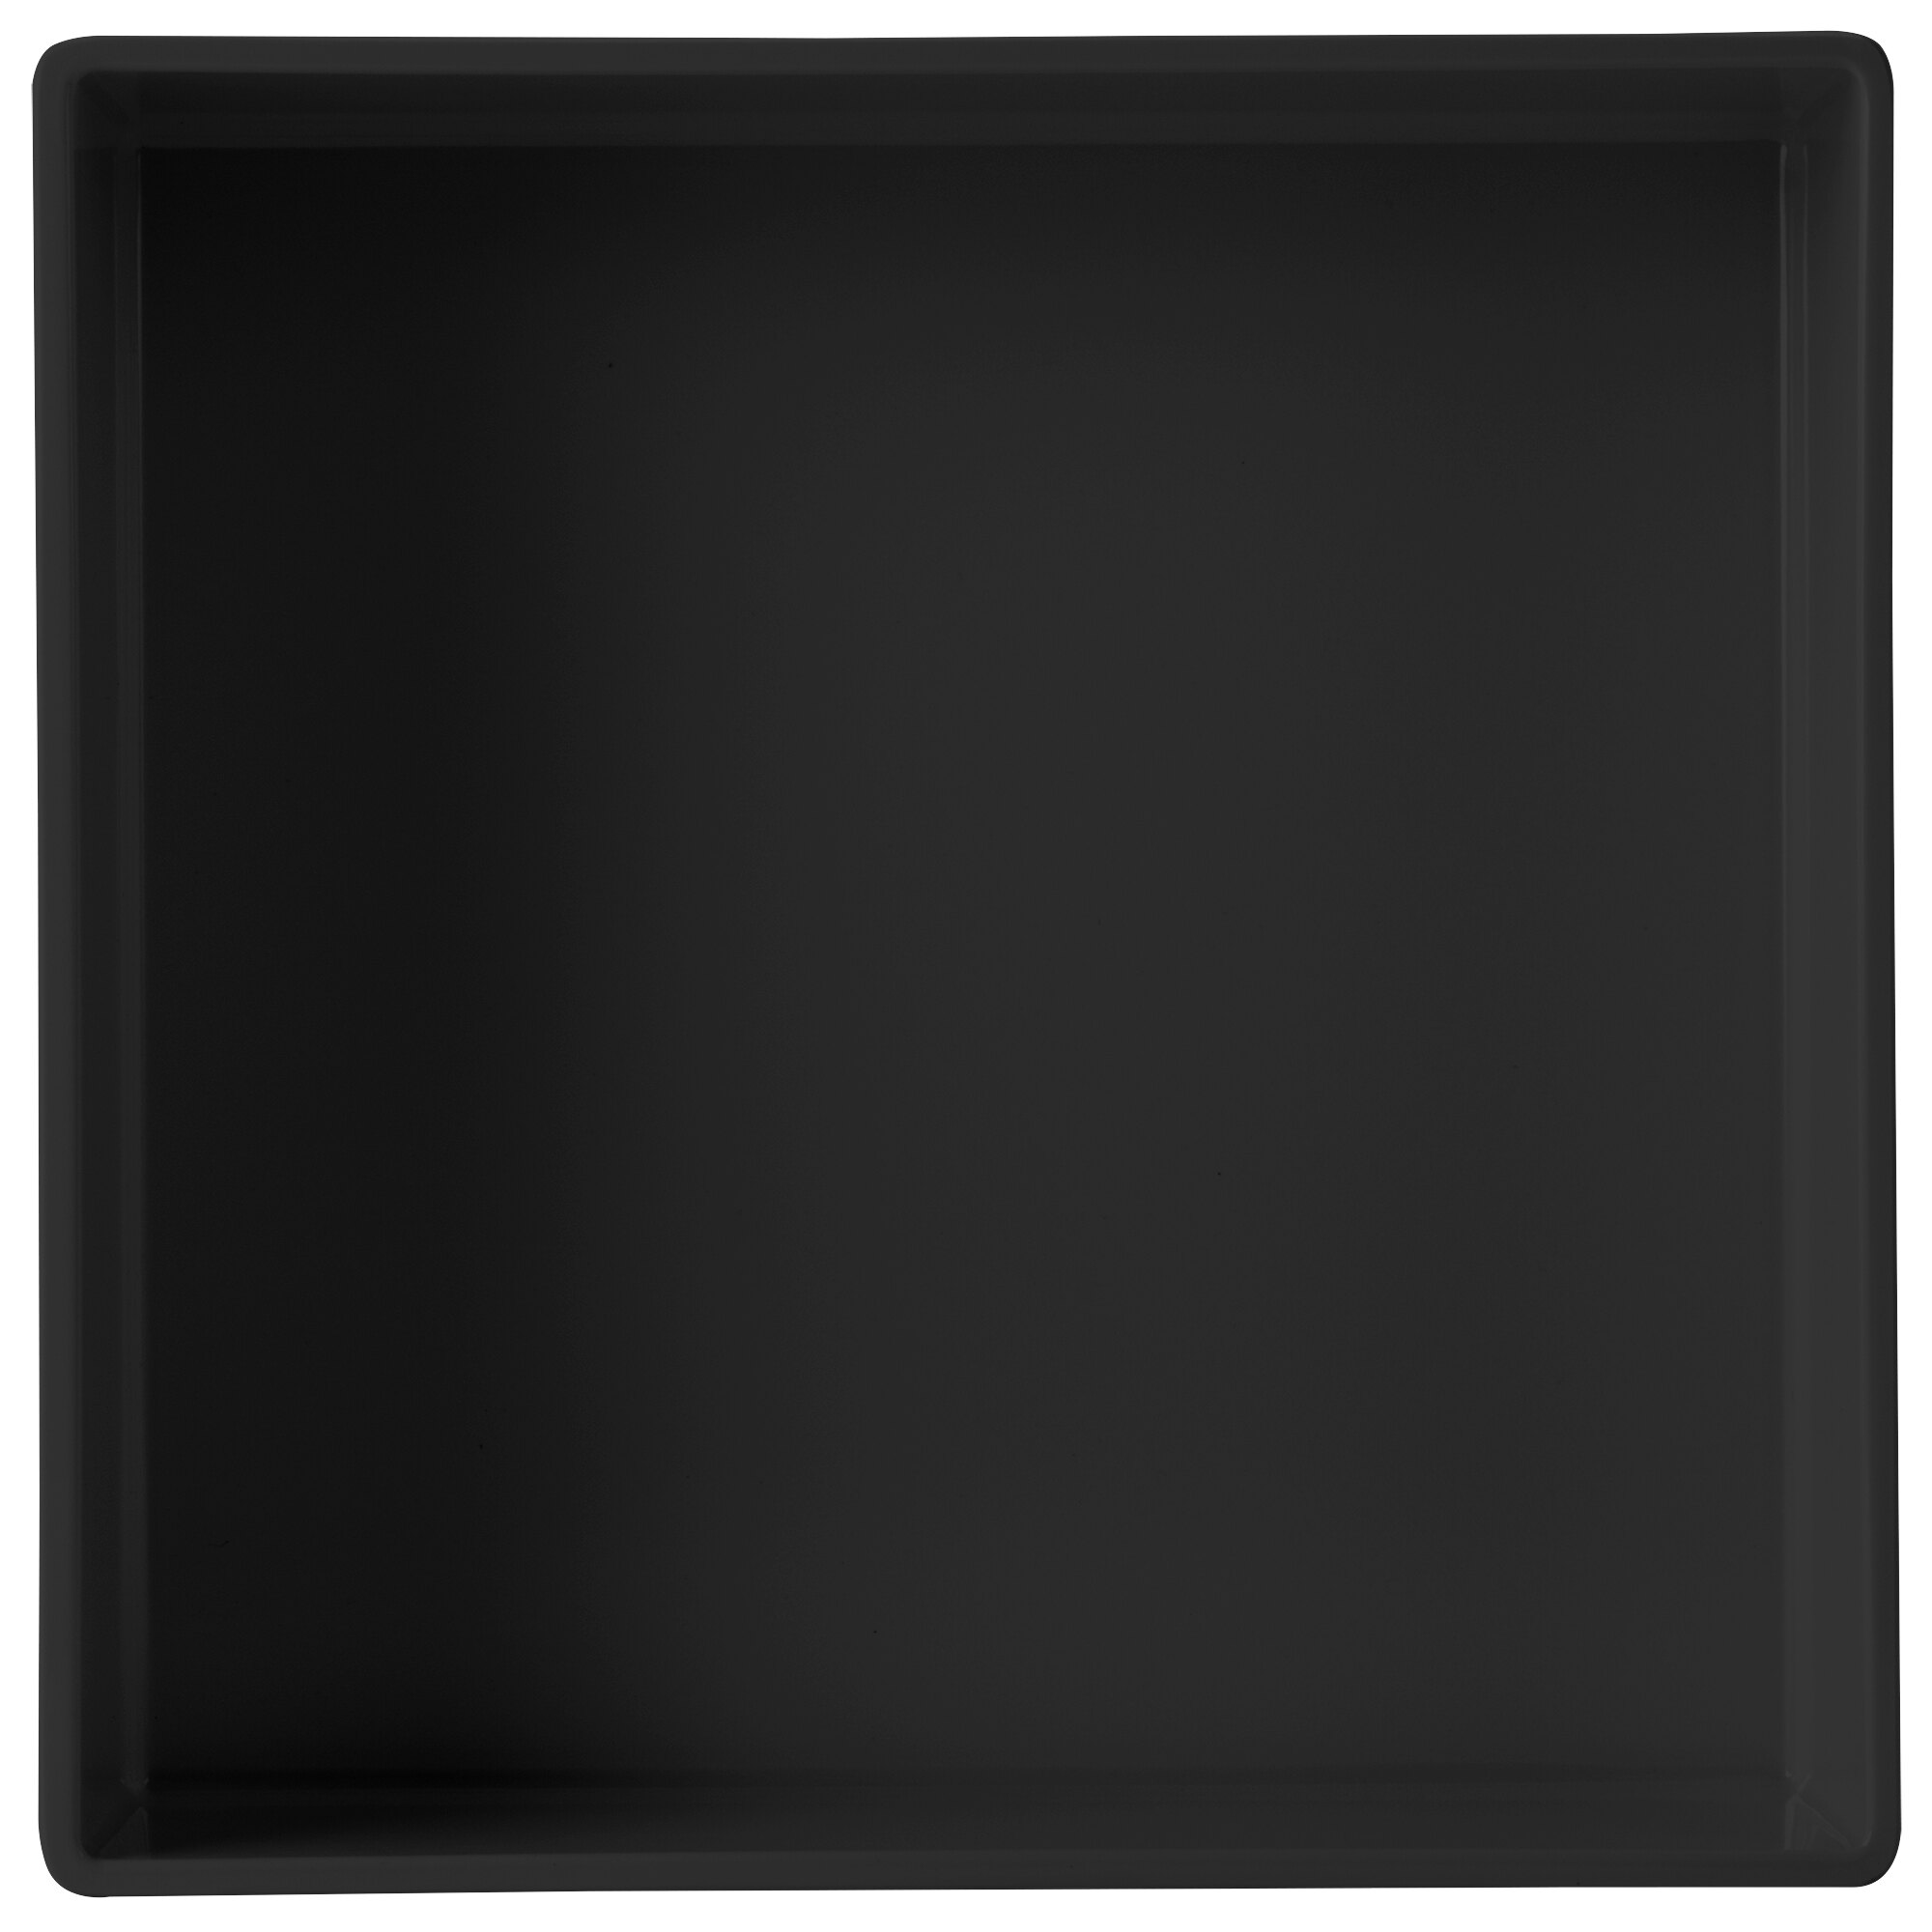 Cal-Mil 1393-13M Cater Choice Black Melamine Box - 10